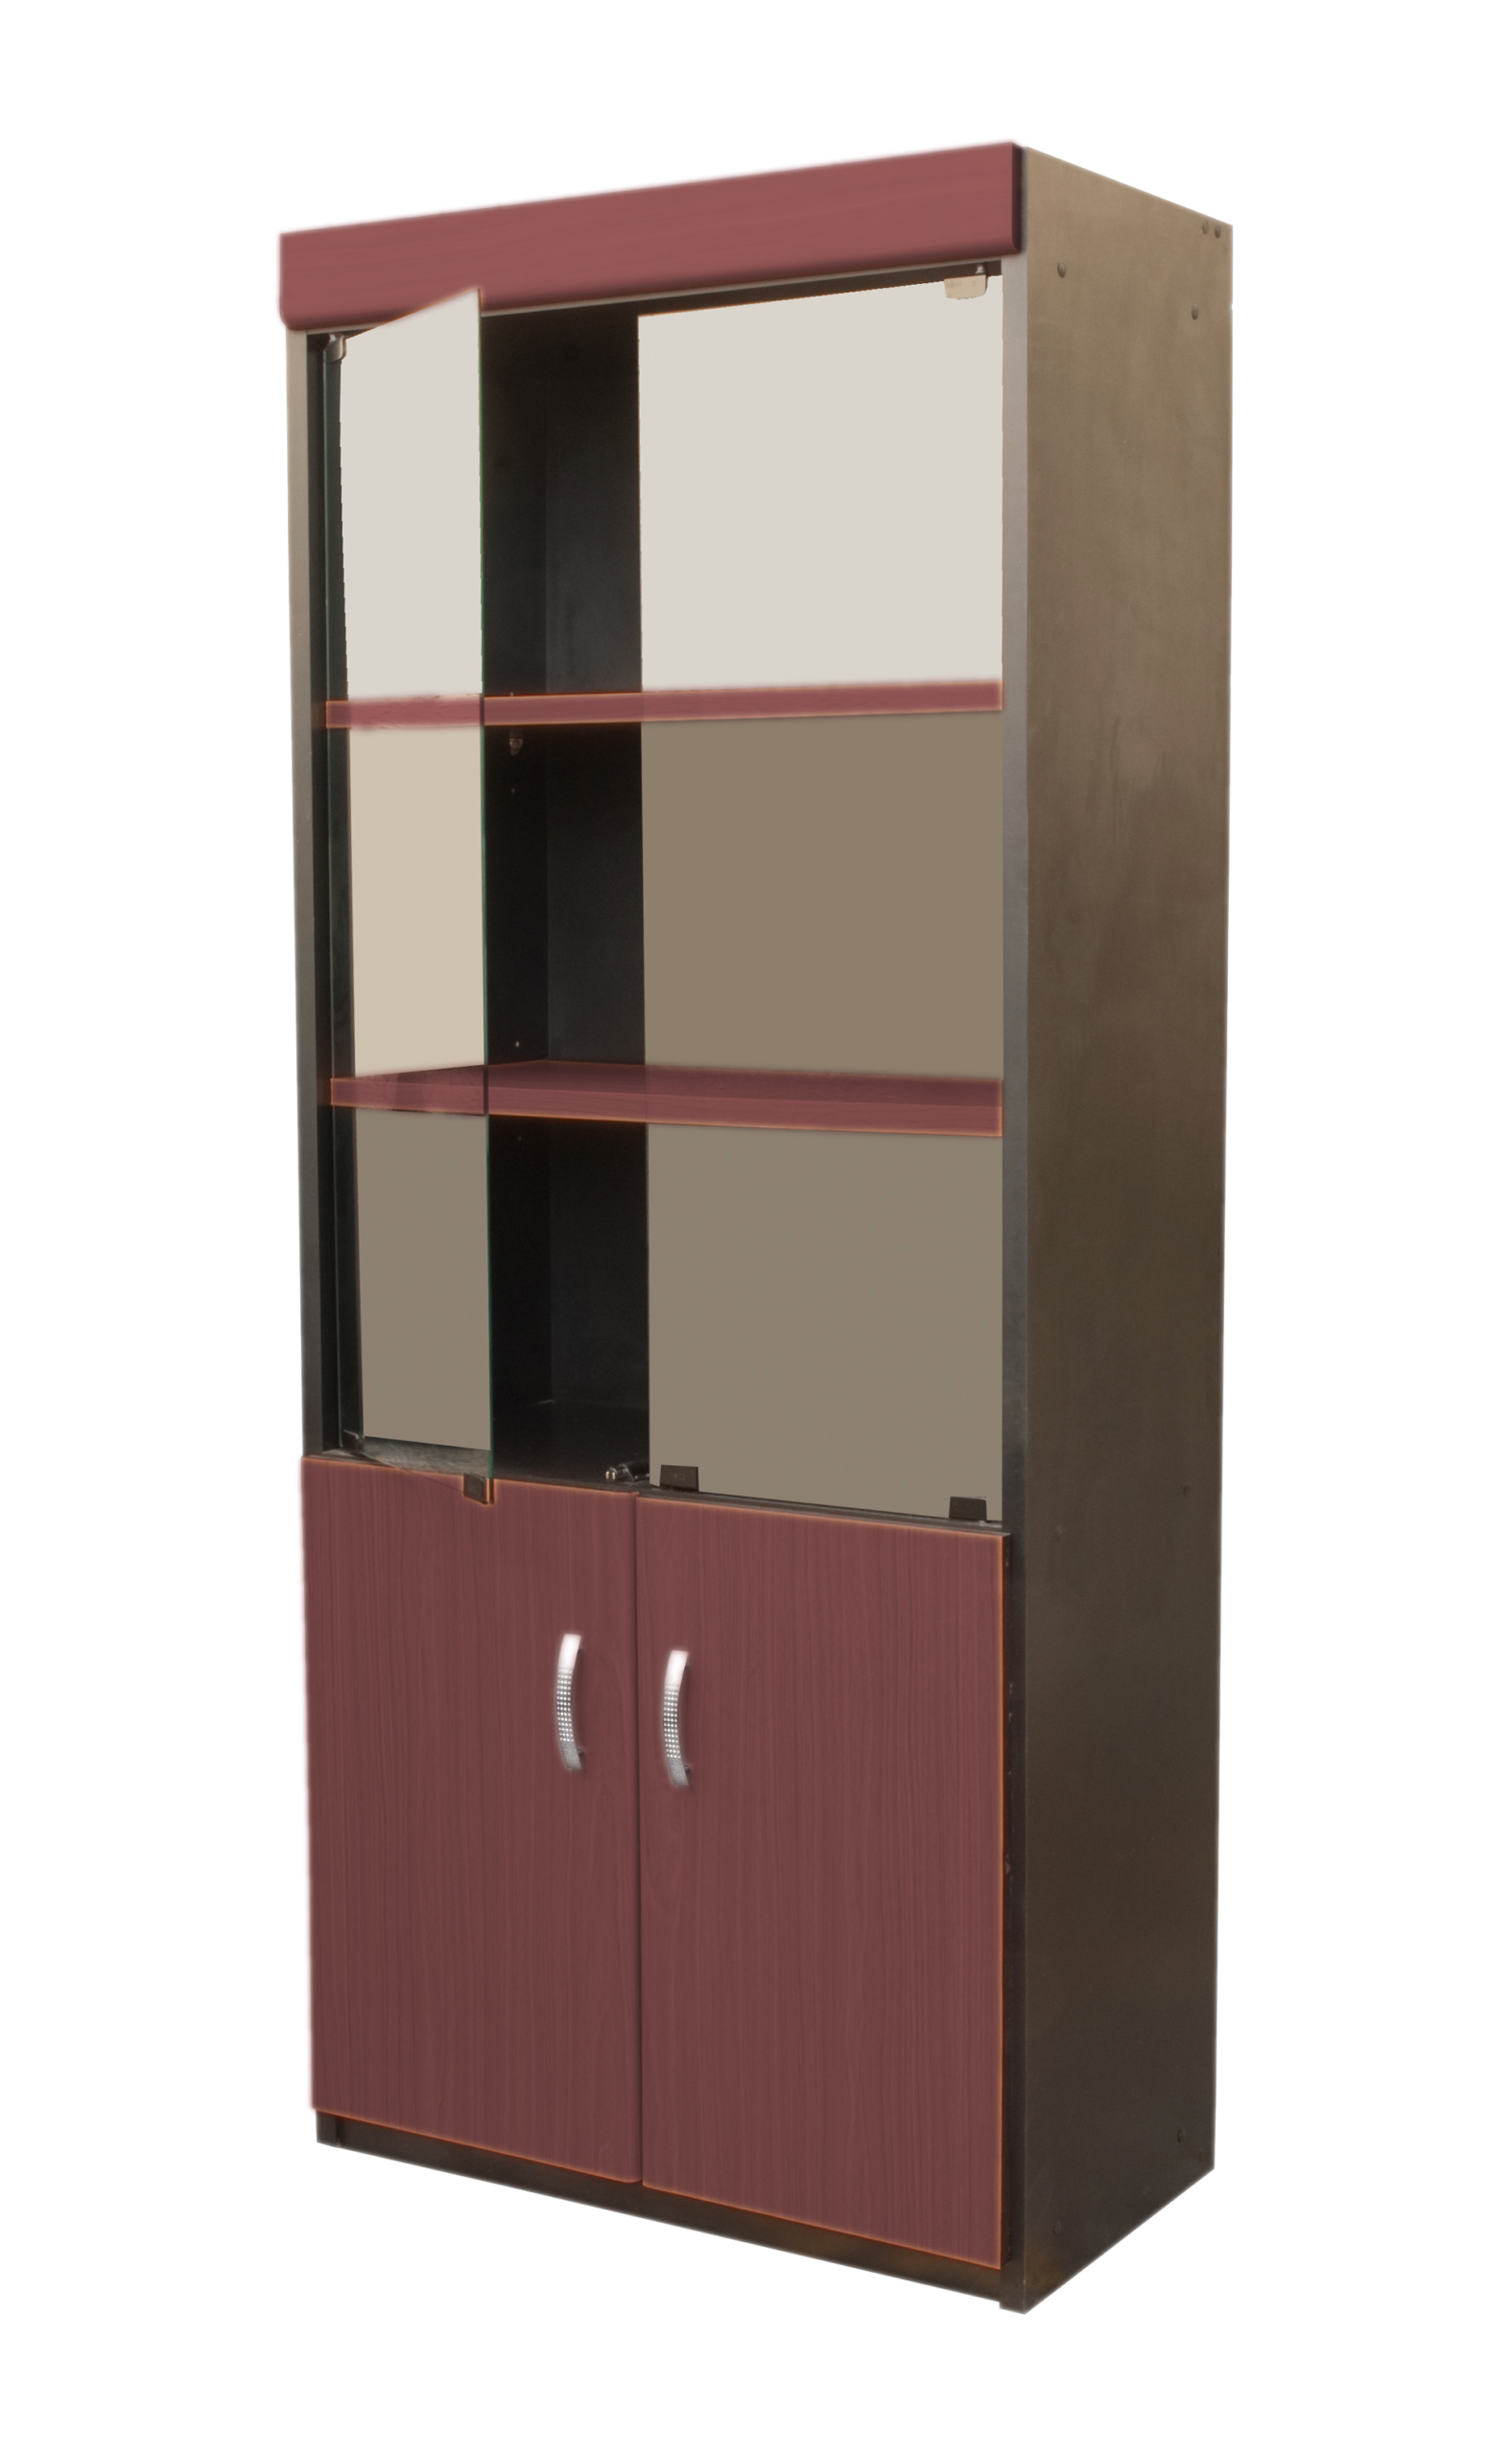 Un archivador, armario y estantería con un diseño moderno de gabinetes llenan el espacio interior con muebles funcionales y almacenamiento.